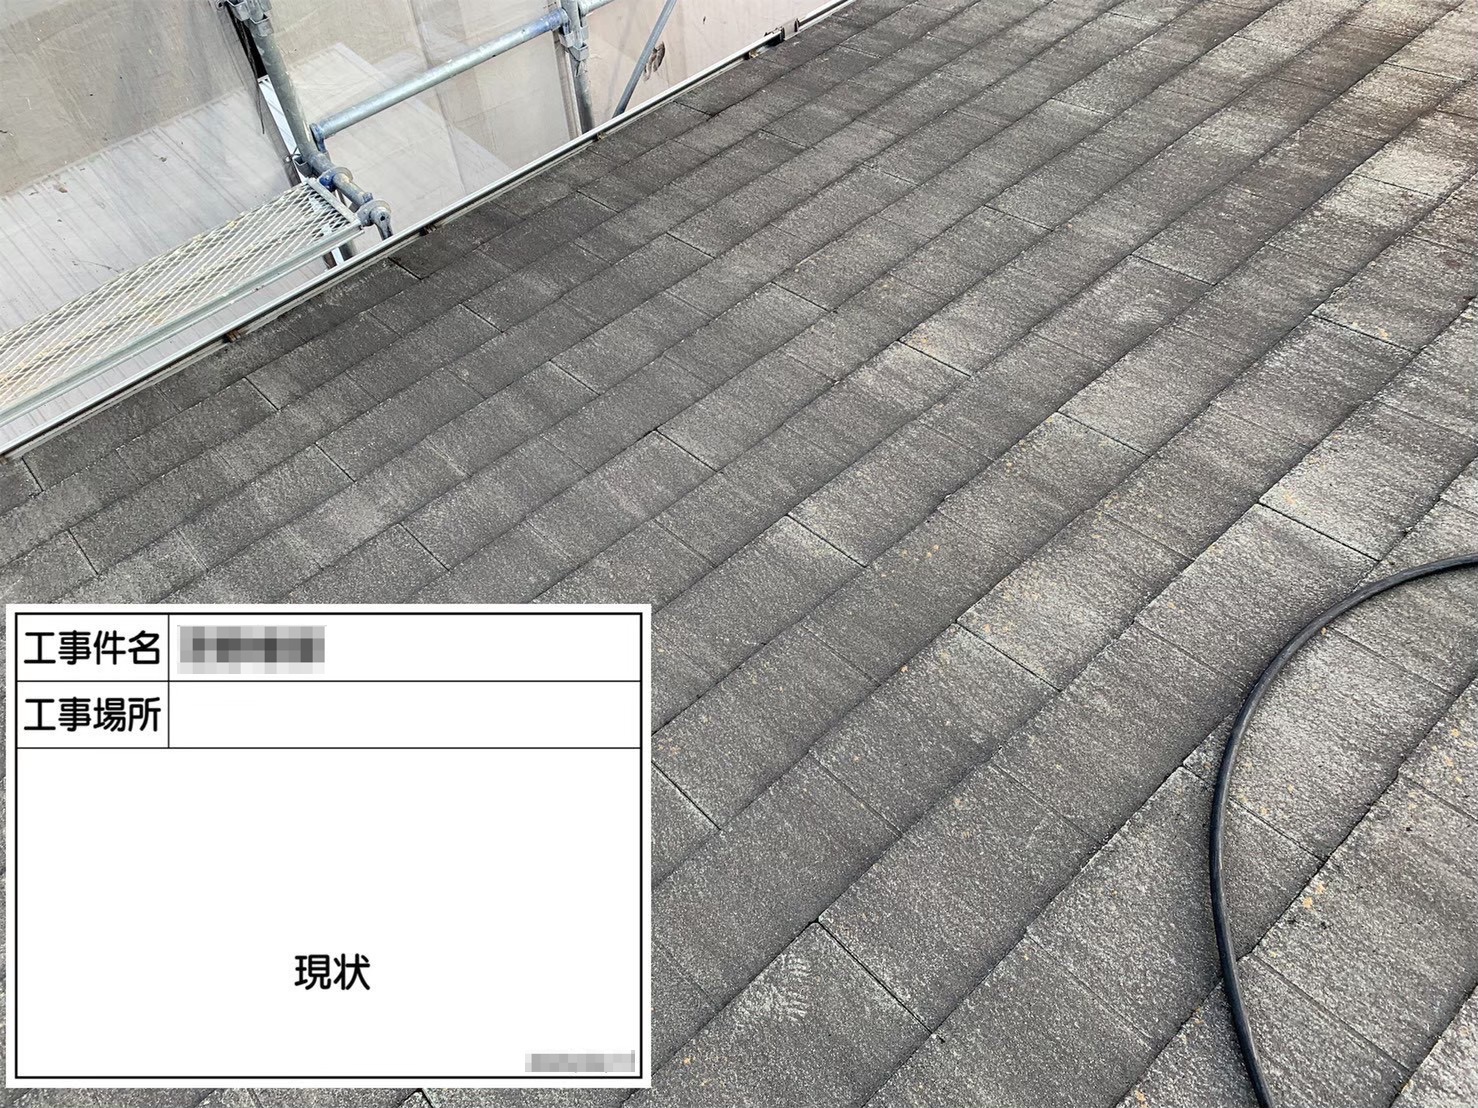 屋根と外壁を一緒に塗装してほしい【大阪府河内長野市 S様邸】屋根・外壁塗装、バルコニー防水工事